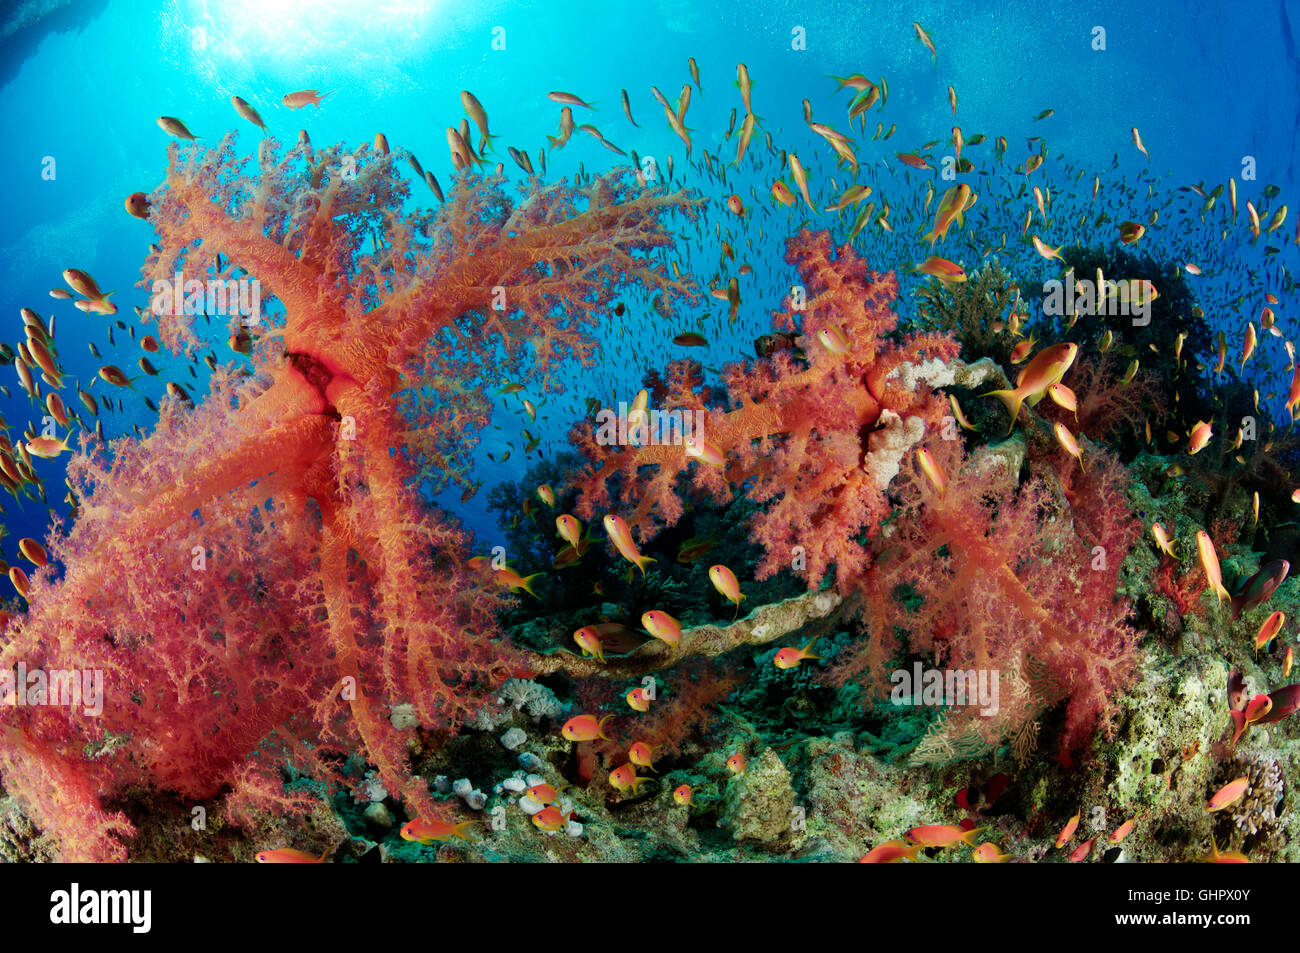 Coral reef con Hemprichs morbido rosso corallo ad albero e Orange Basslet o mare Goldie, Hurghada, Isola Giftun Reef, Mar Rosso, Egitto Foto Stock